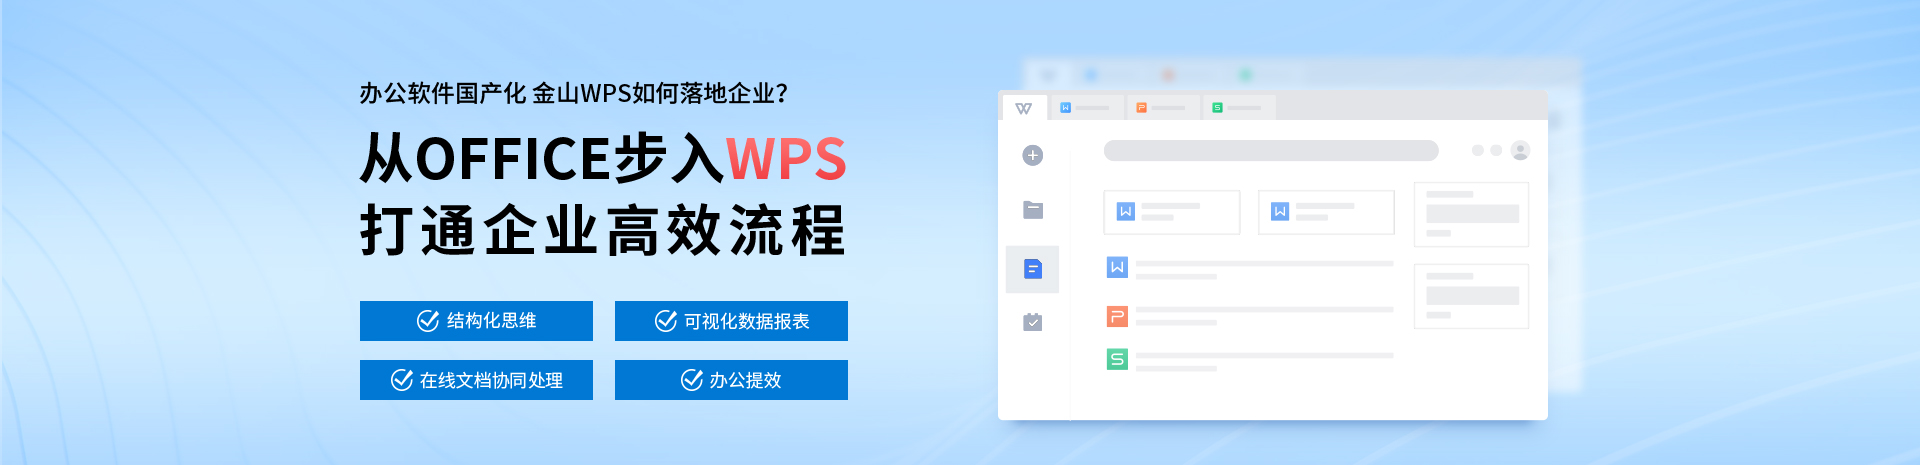 上海办公软件-PPT培训